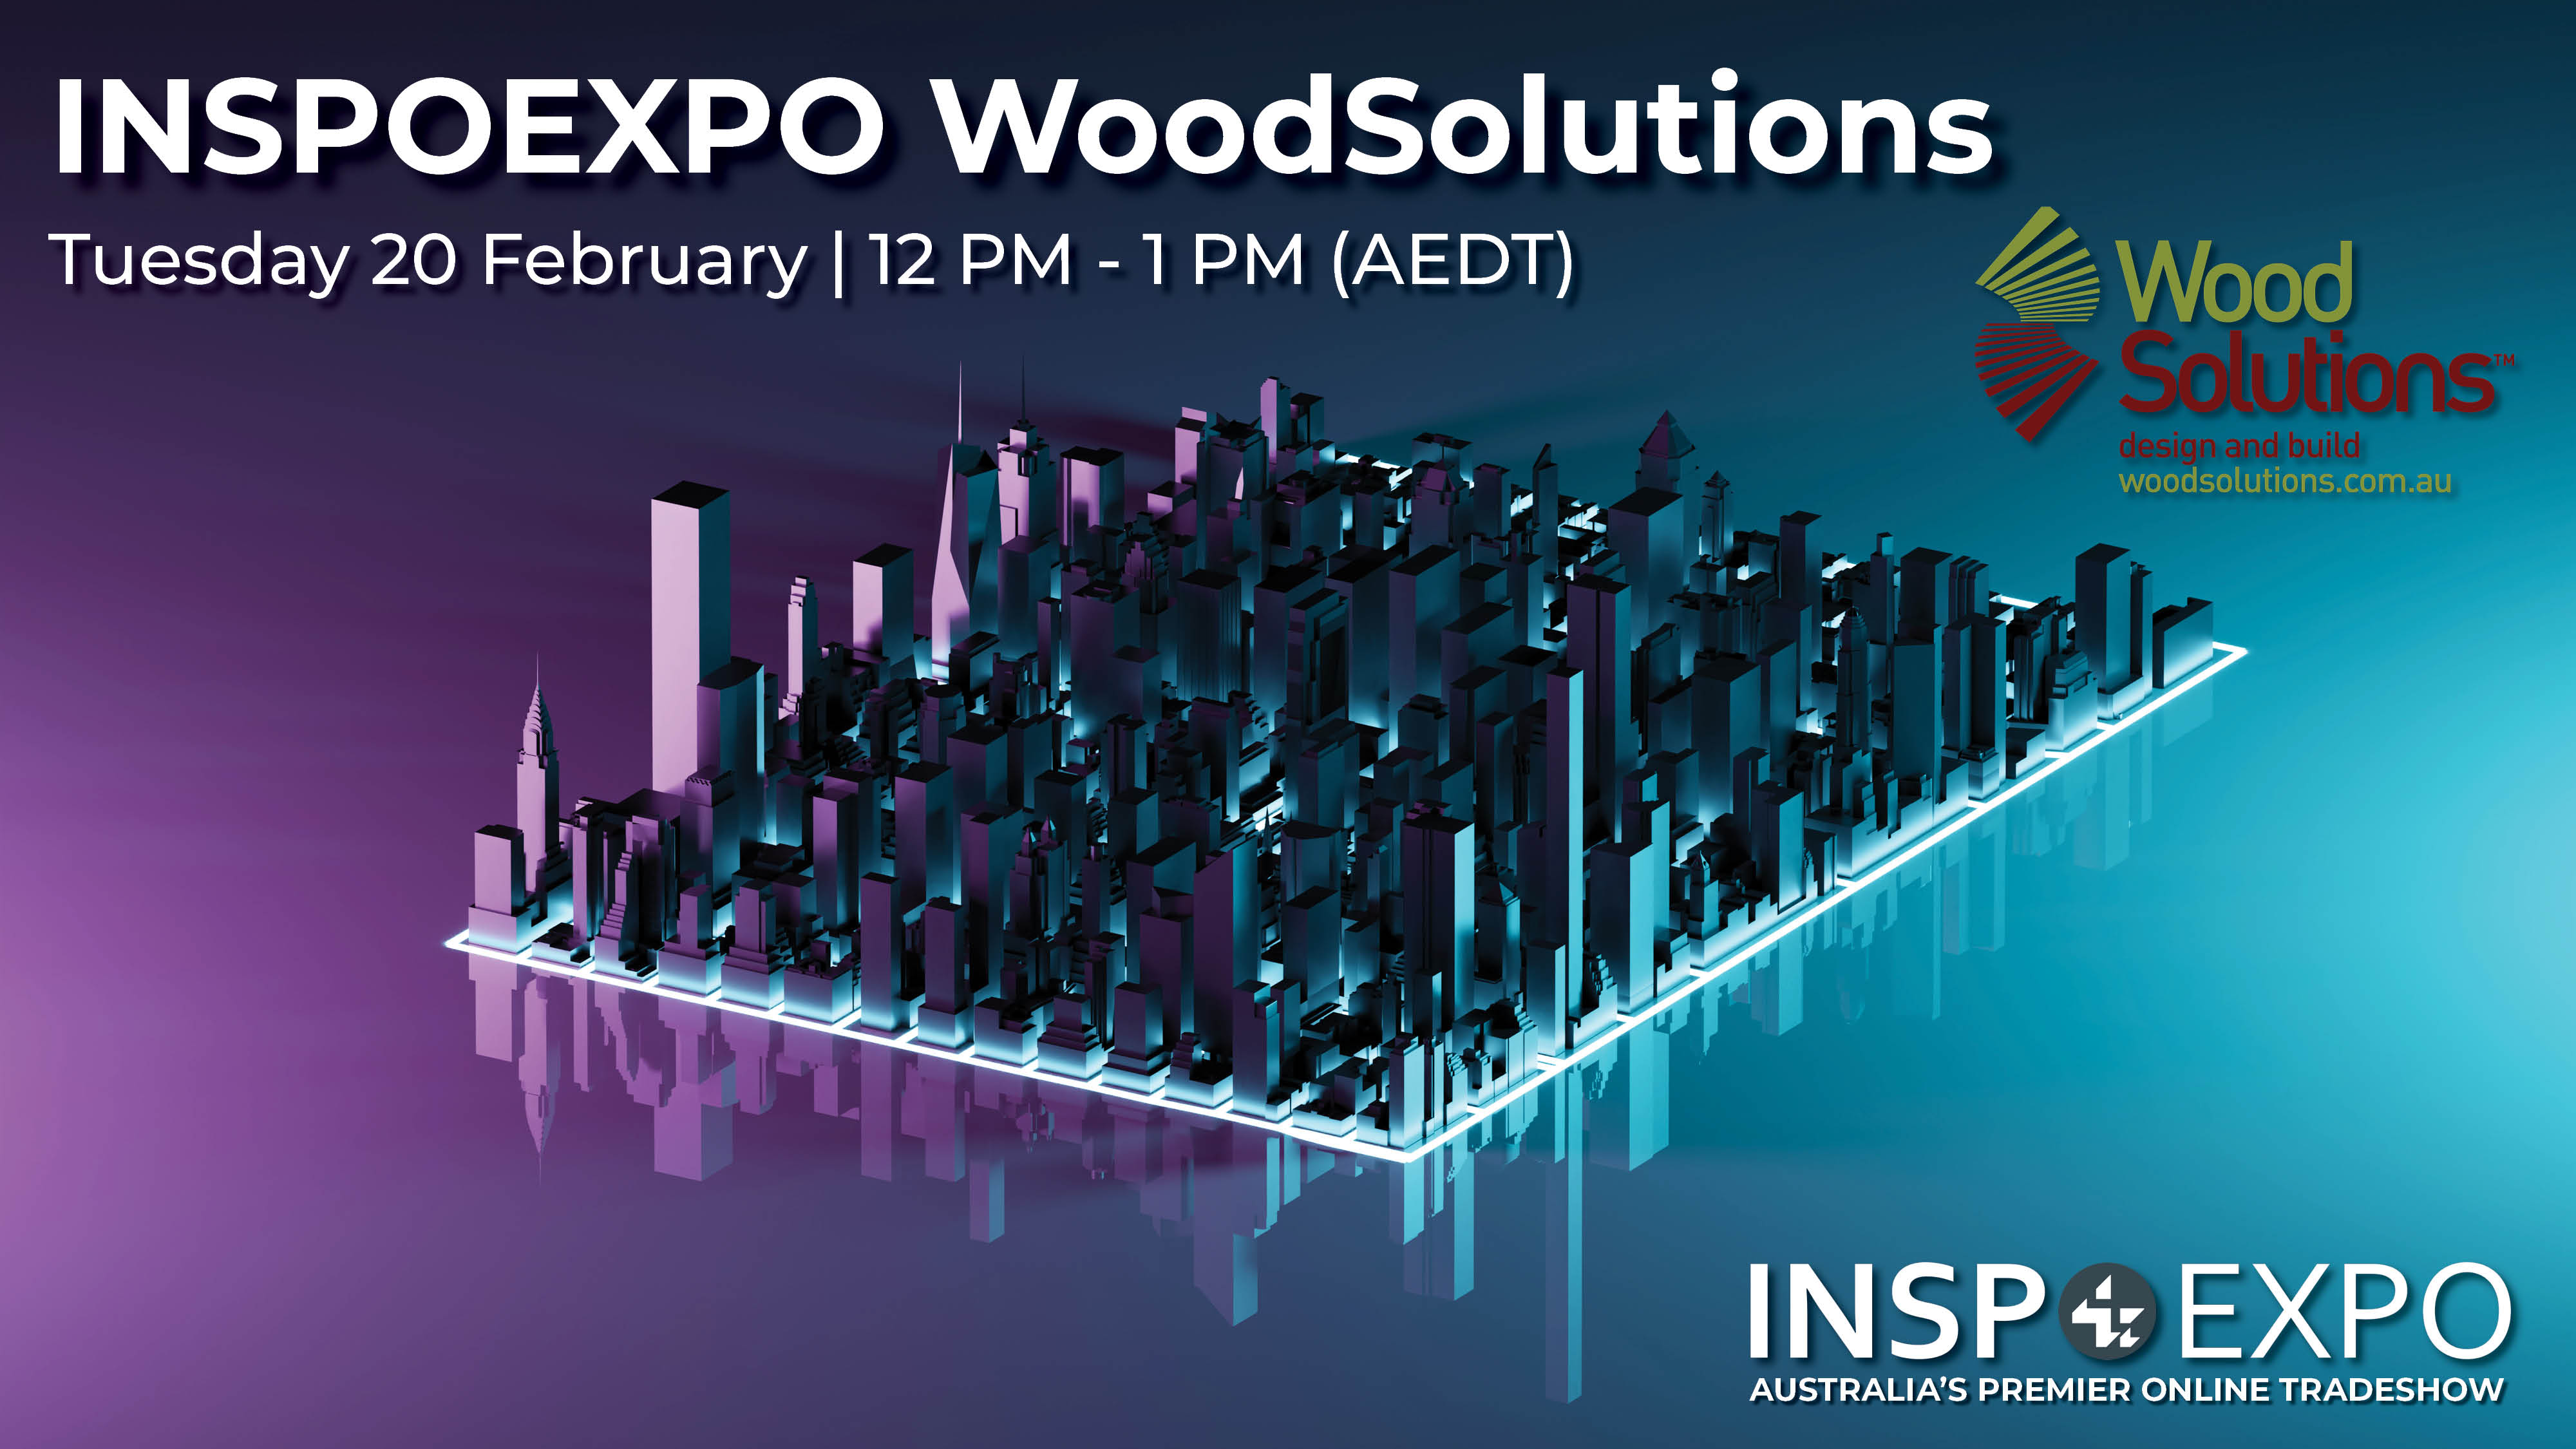 INSPOEXPO WoodSolutions